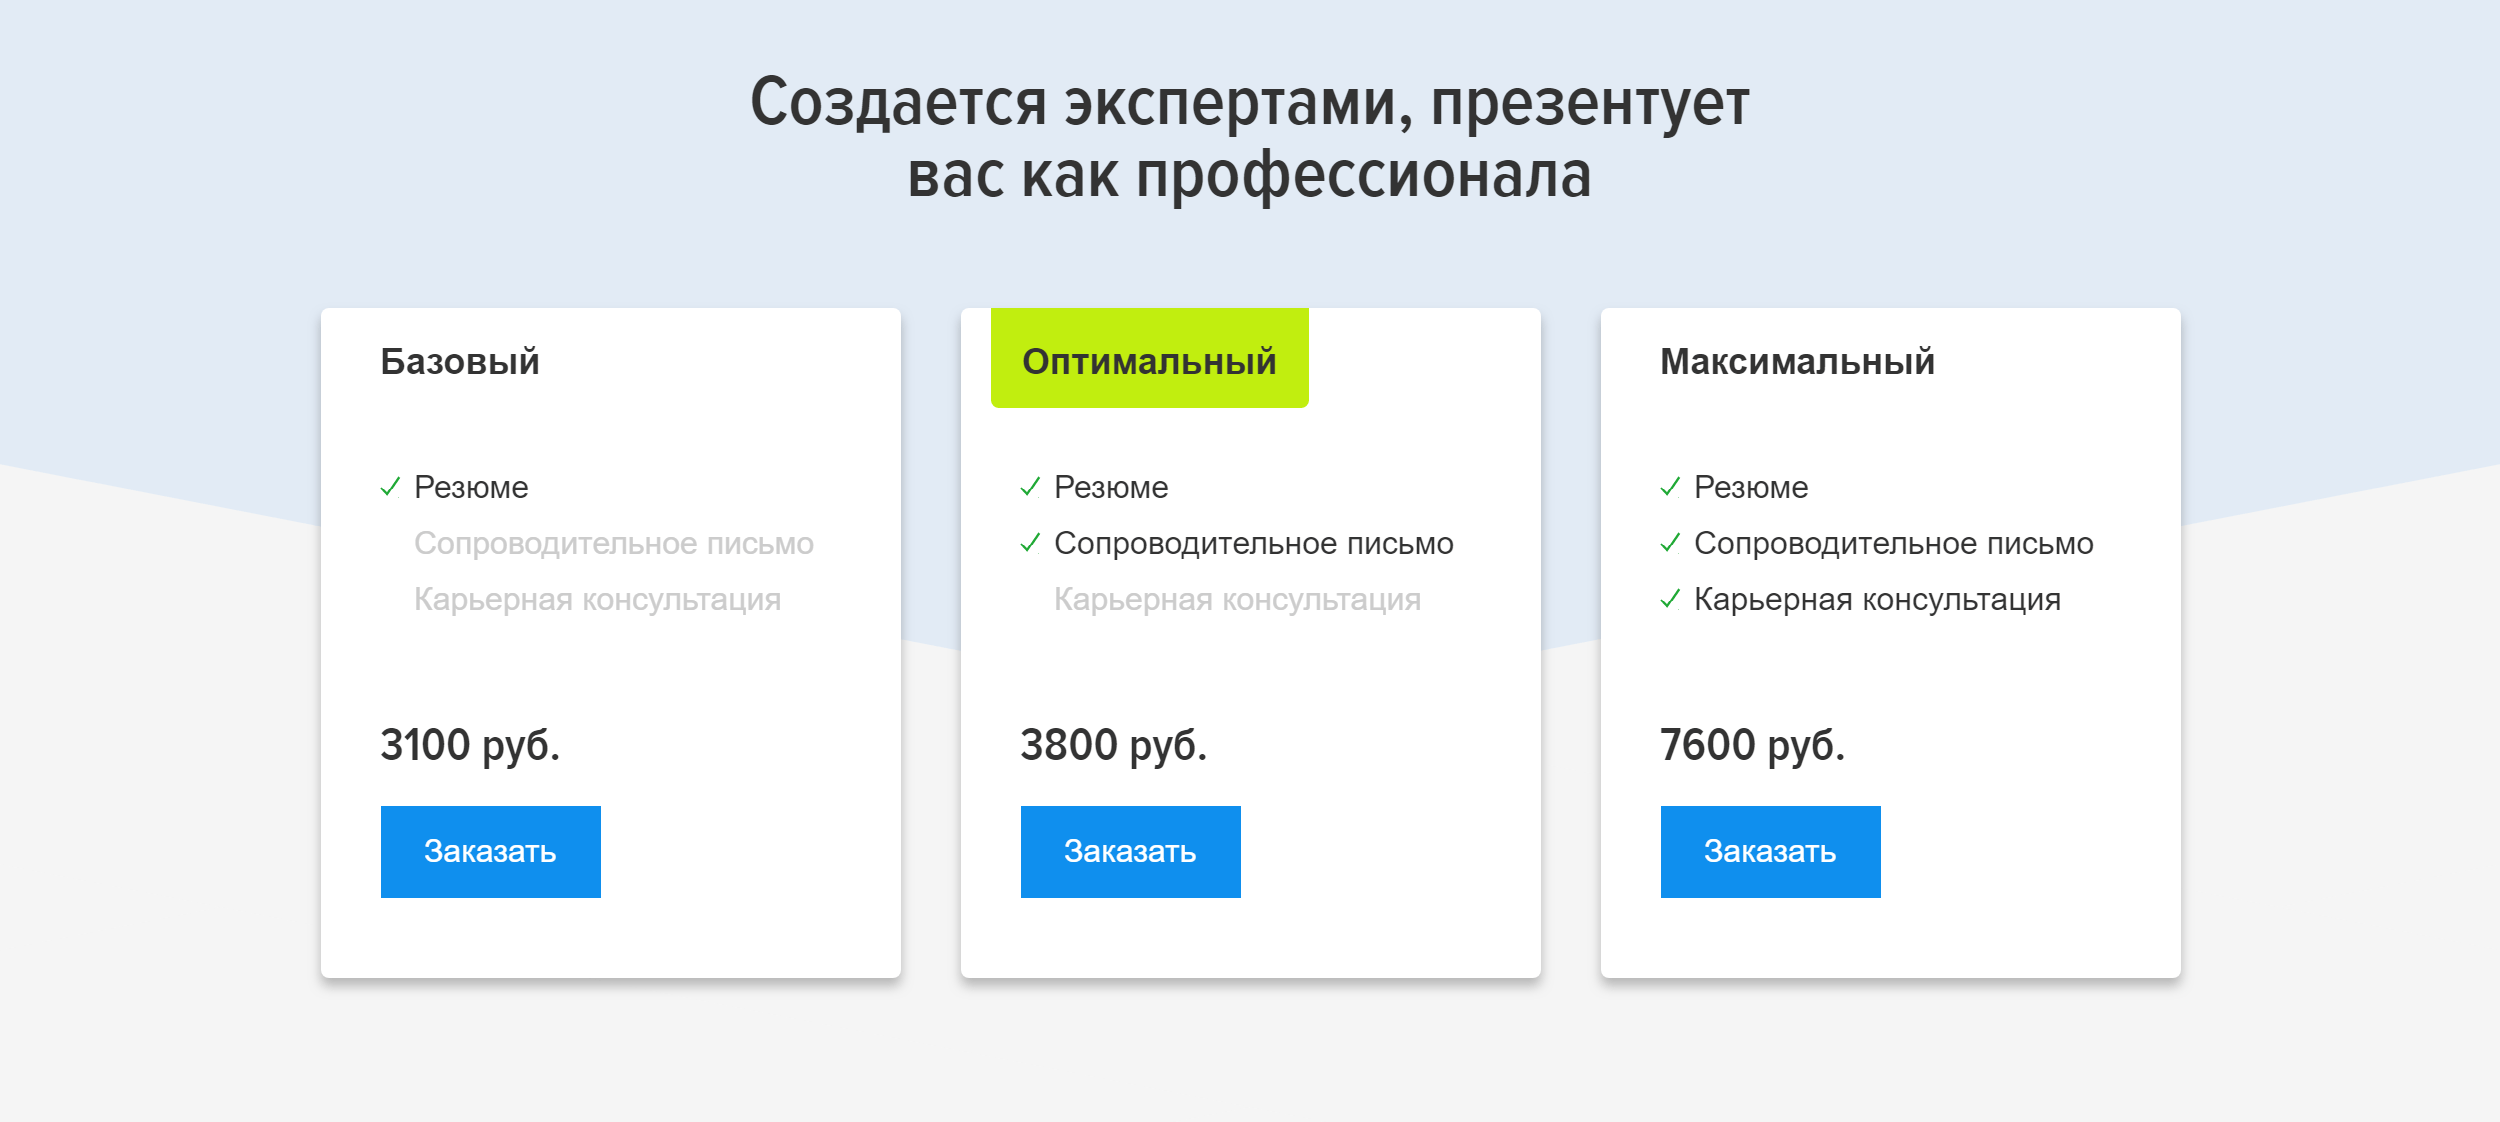 Заказать резюме можно на популярном сайте для поиска работы hh.ru. Составление резюме обойдется в 3100 <span class=ruble>Р</span>. Если нужно резюме с сопроводительным письмом или консультация карьерного специалиста, выйдет дороже